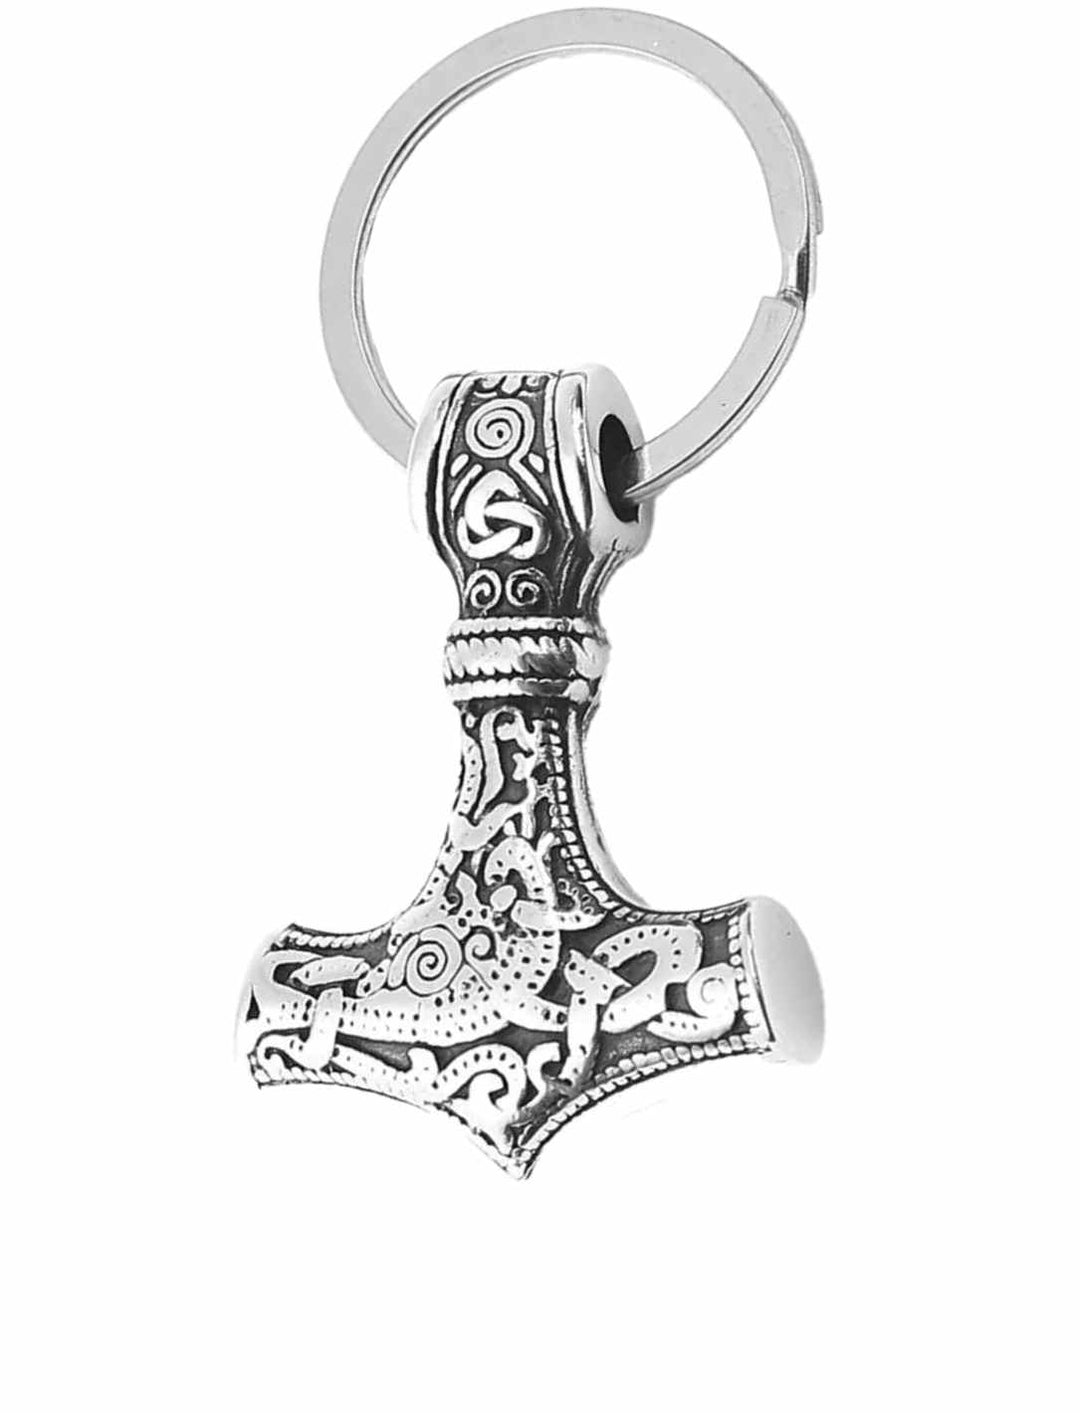 chlüsselring des Mjölnirs – Edelstahl-Schlüsselanhänger in Form von Thor's Hammer mit nordischen Verzierungen auf weissem Hintergrund.